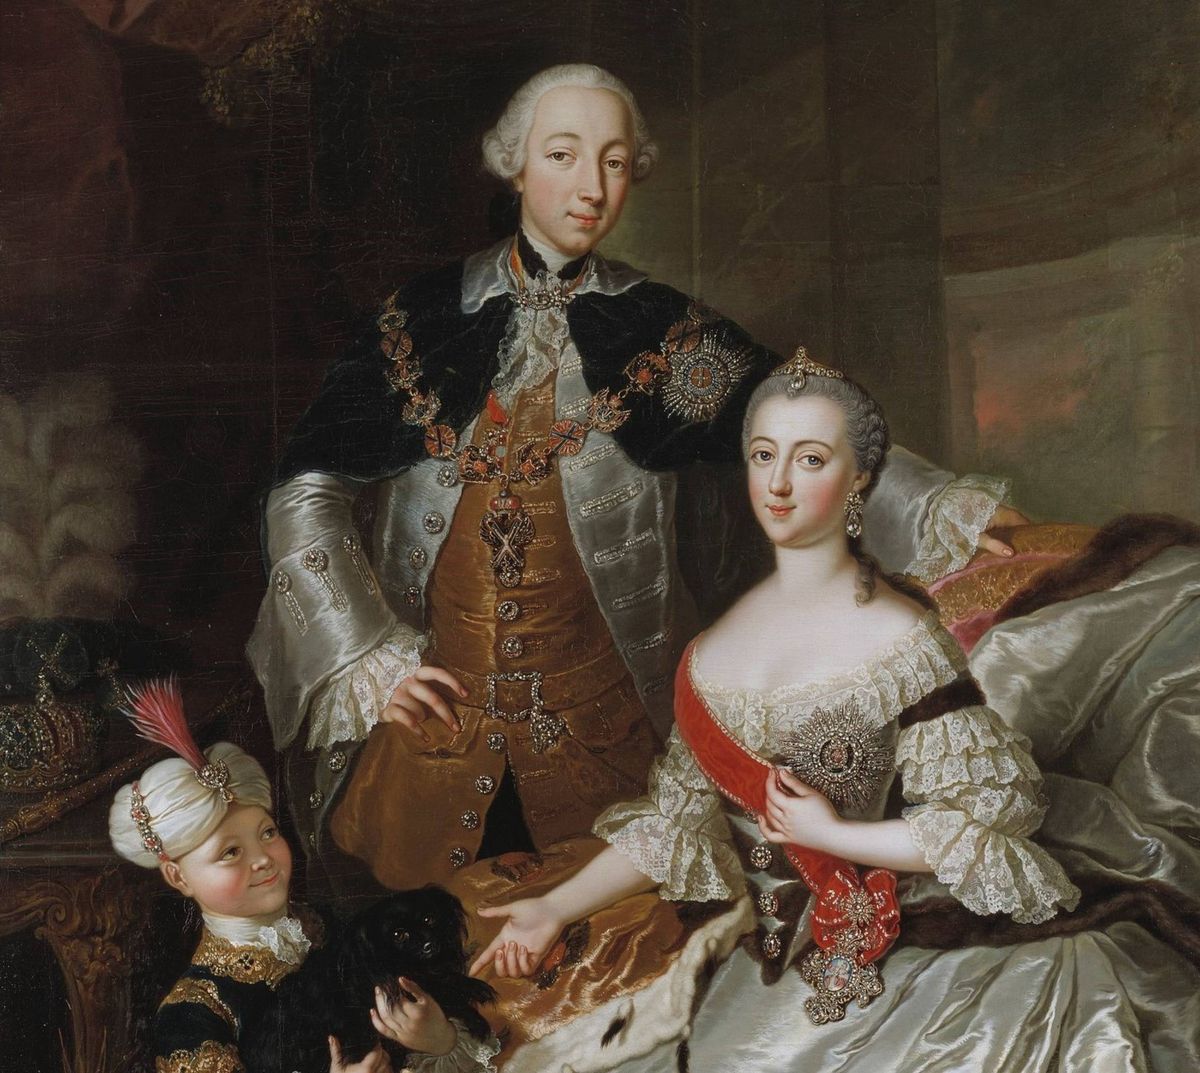 Piotr i Katarzyna na portrecie z 1756 roku